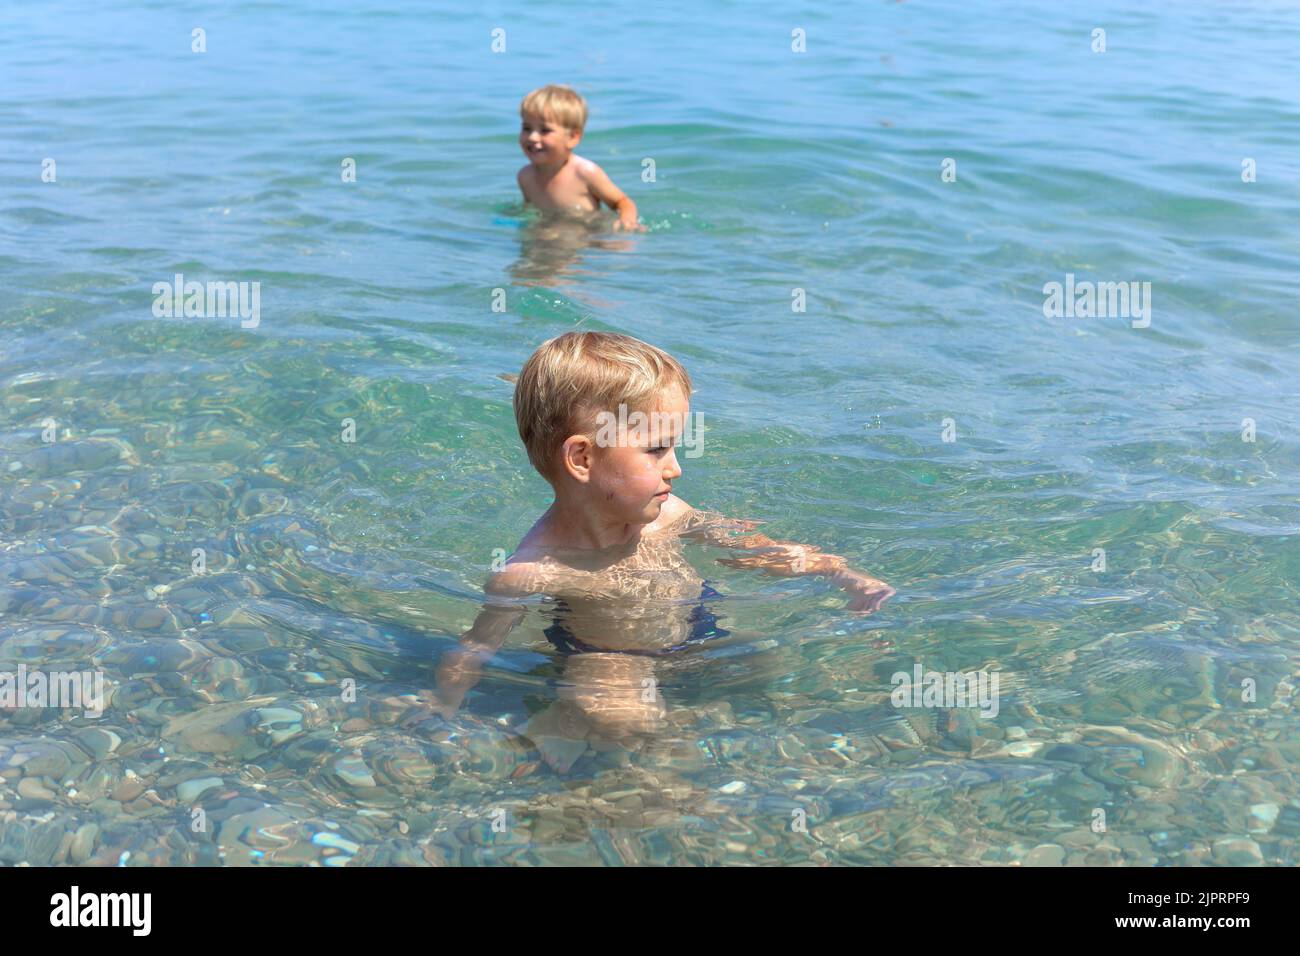 Un petit garçon souriant se détend sous le soleil d'été dans des eaux de mer peu profondes. Concept de vacances d'été en famille. Banque D'Images